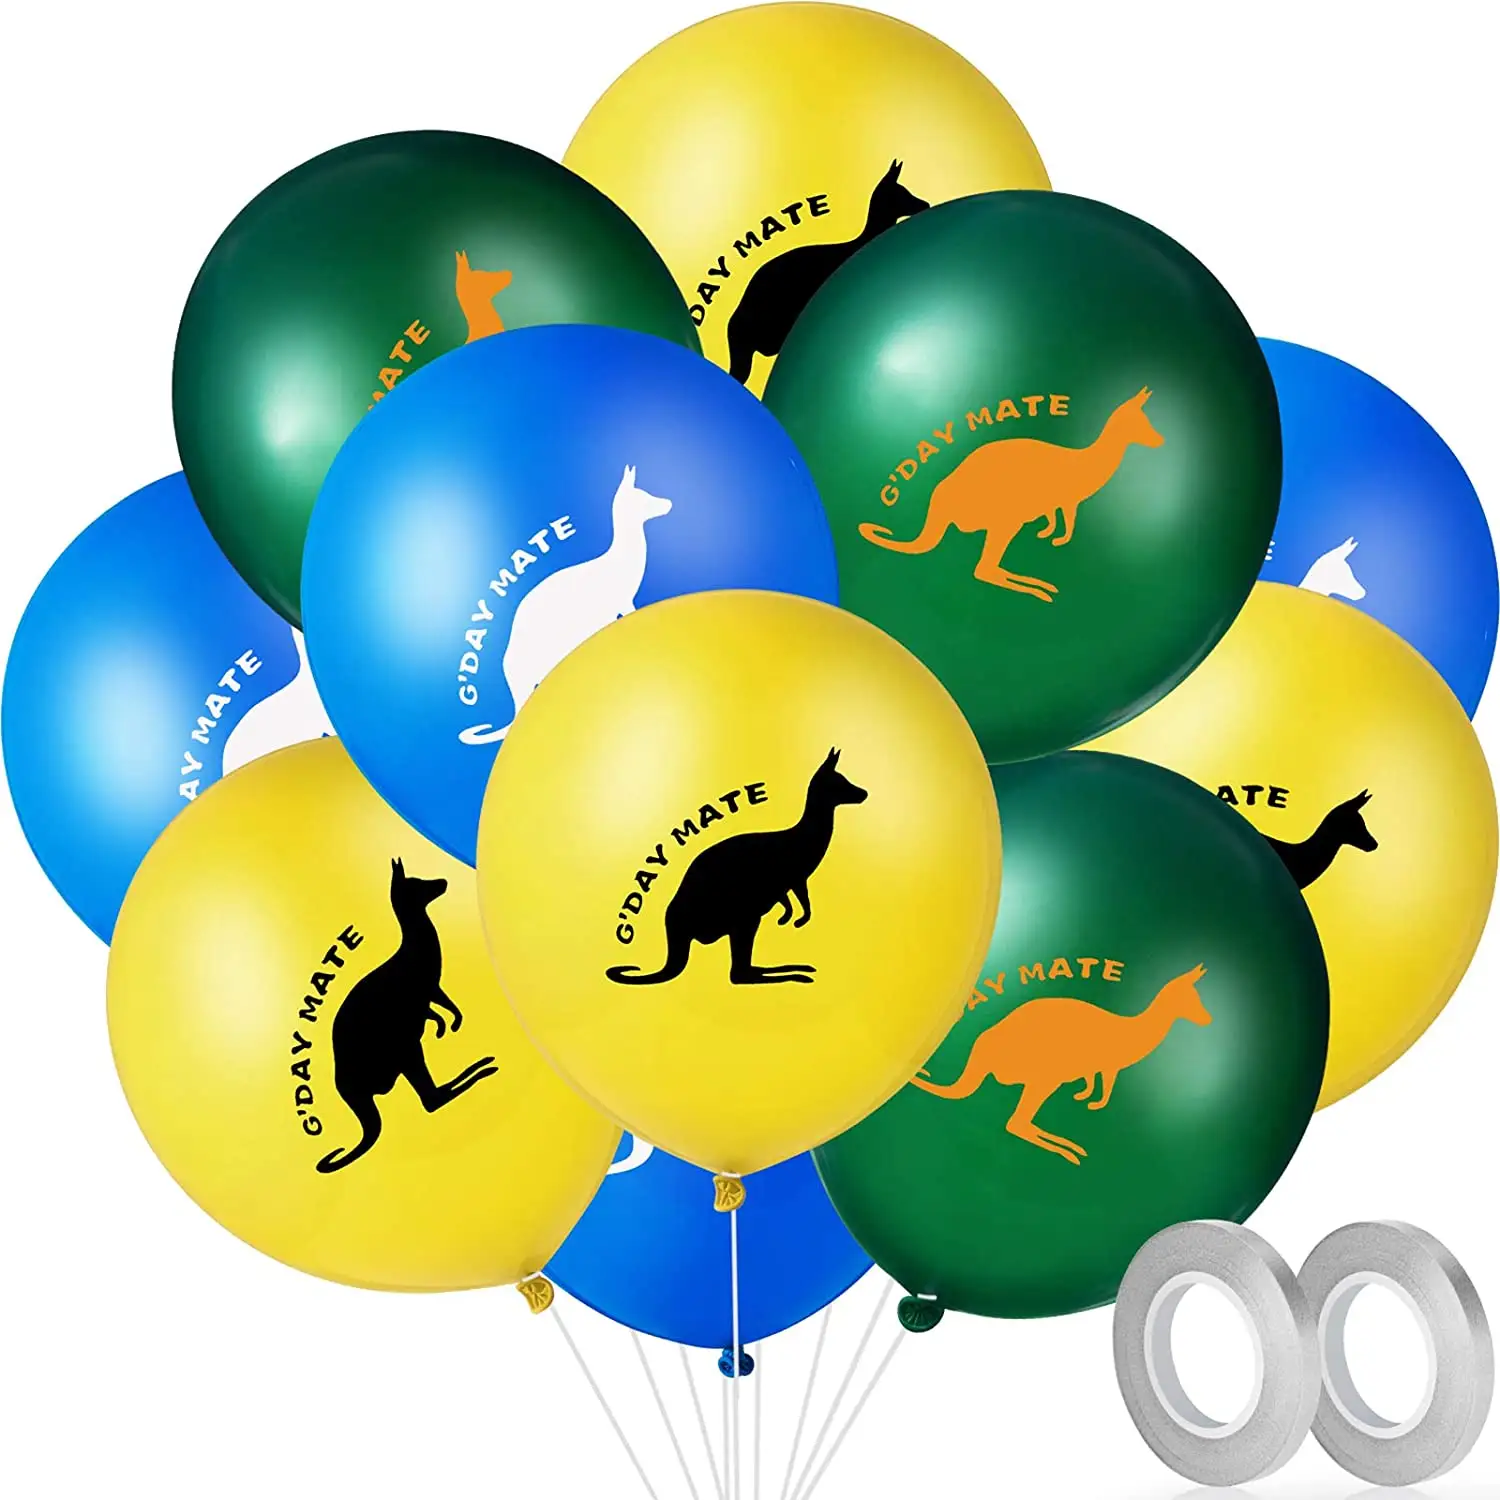 12 дюймов латексные воздушные шары в австралийском стиле, для вечеринки и дня св расходные материалы, 36 шт/партия Фестиваль воздушного шара пачке декорации